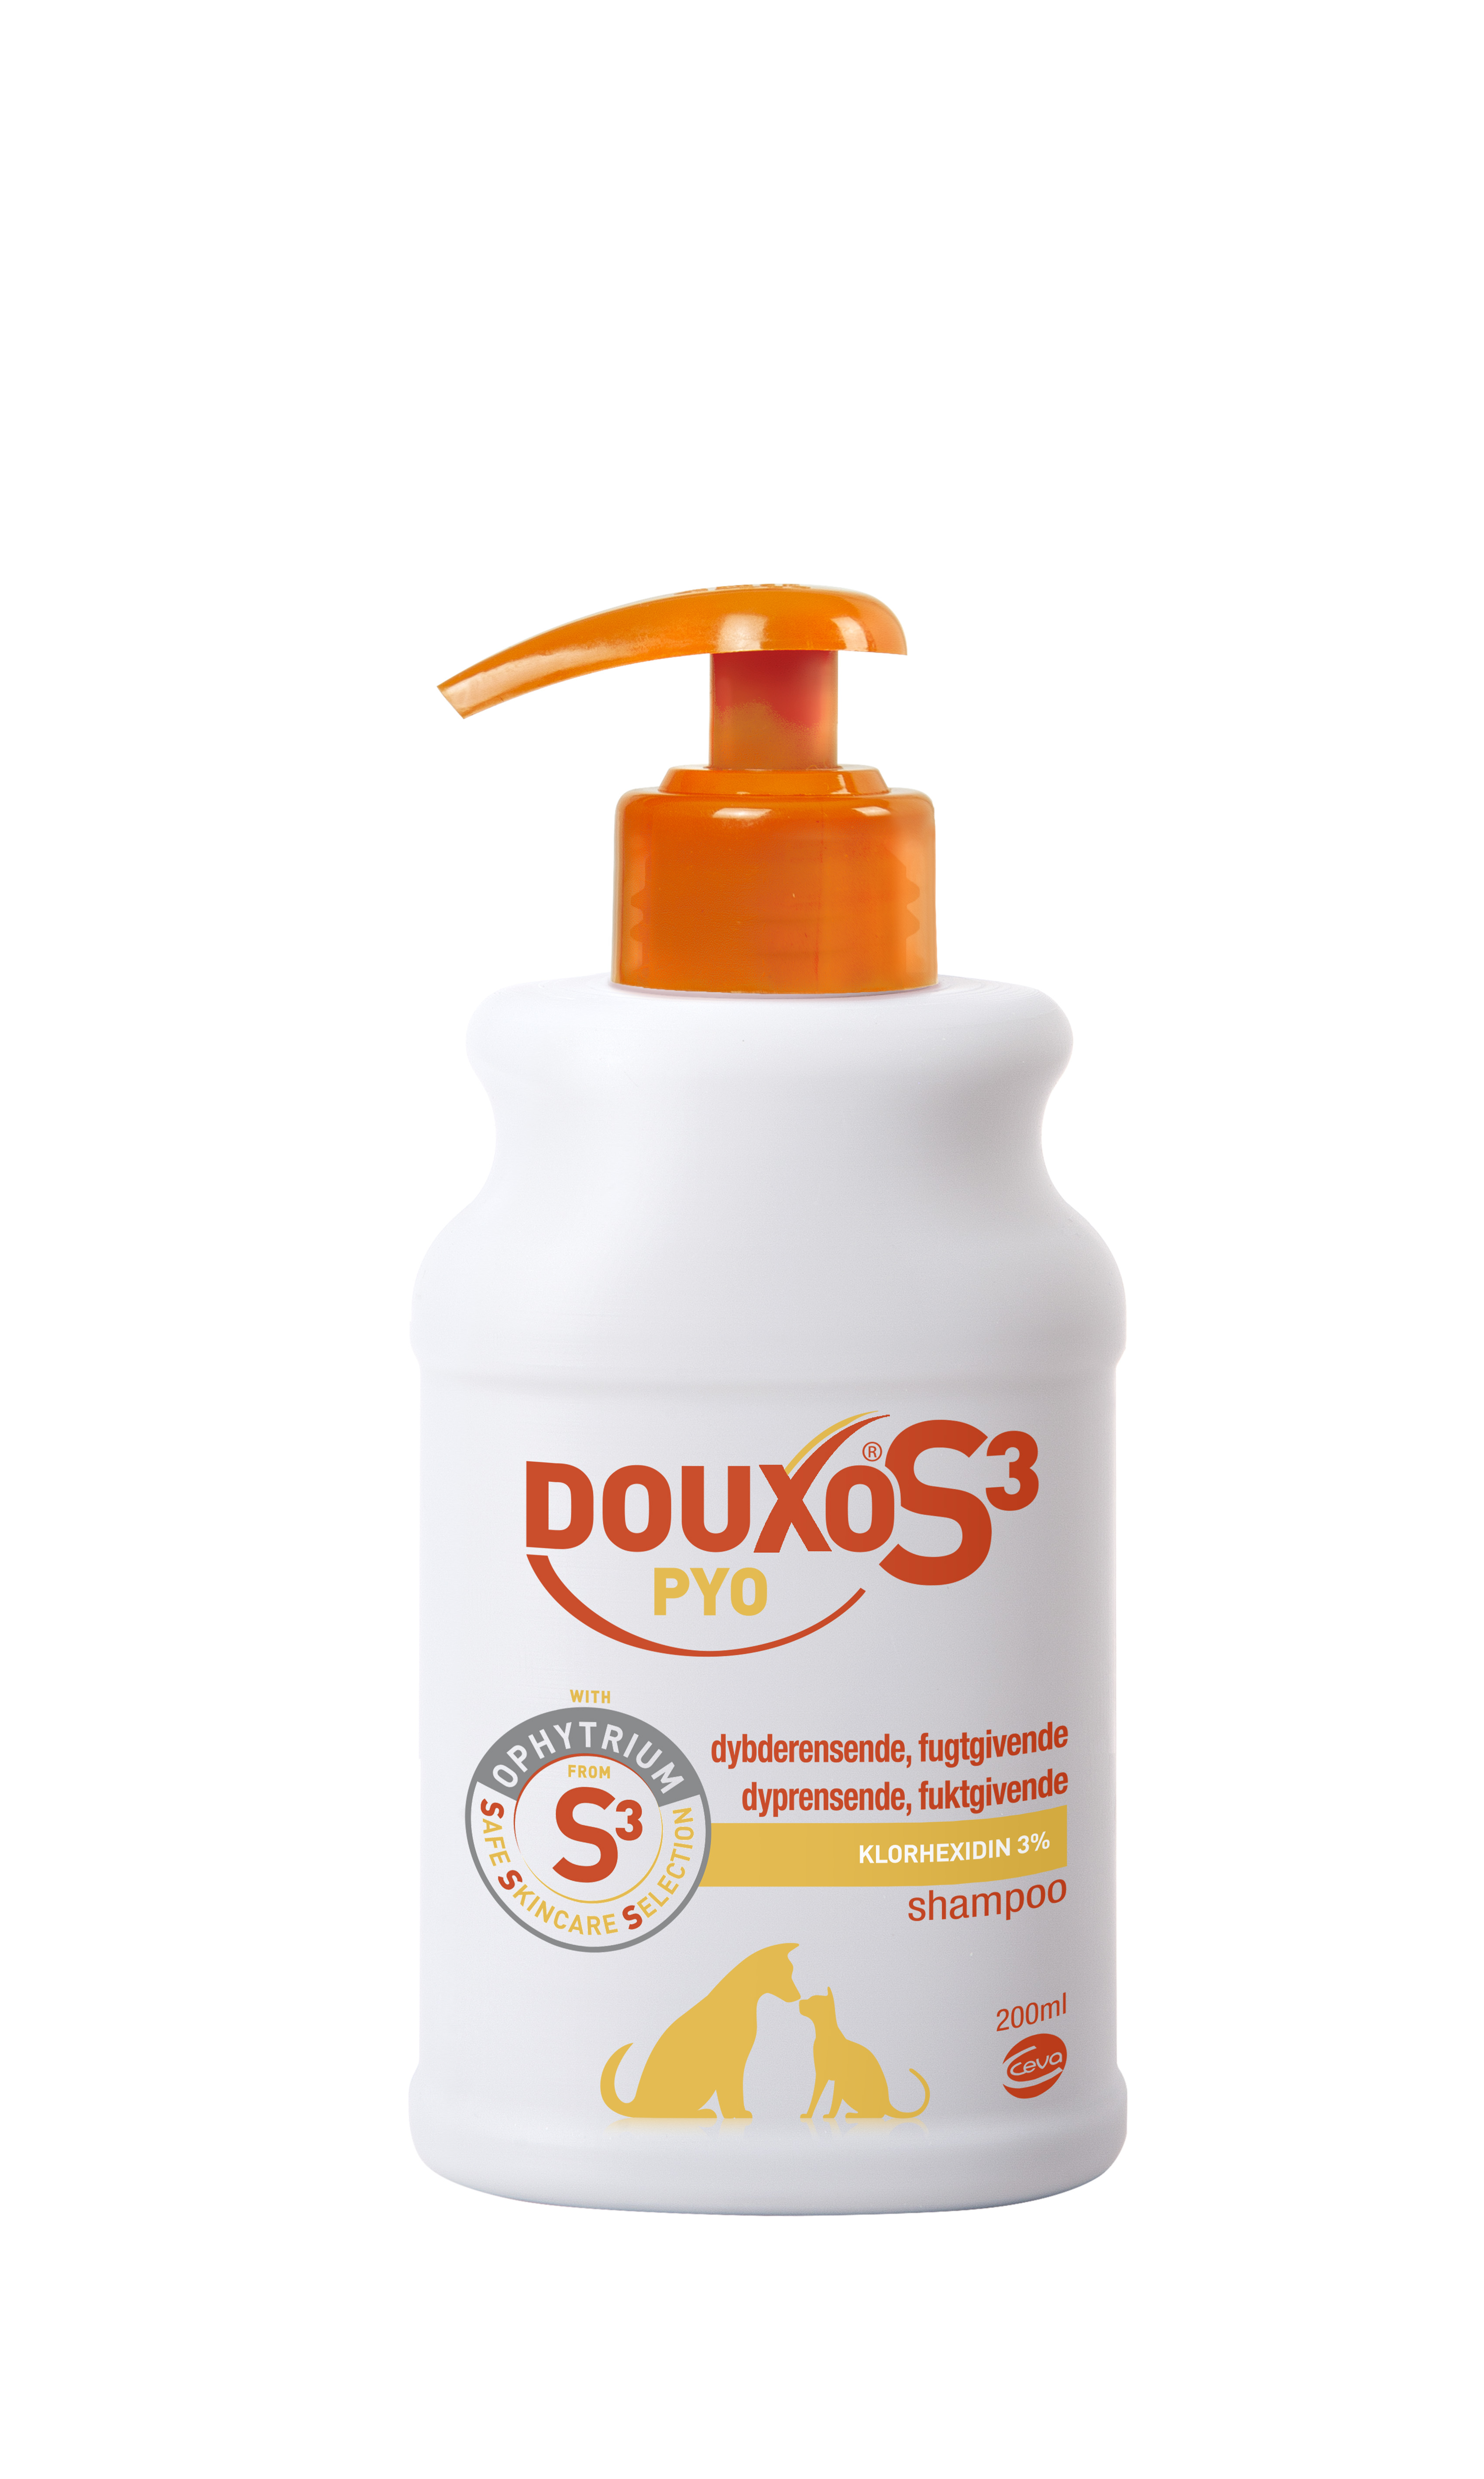 DOUXO S3 PYO Shampoo, 200 ml